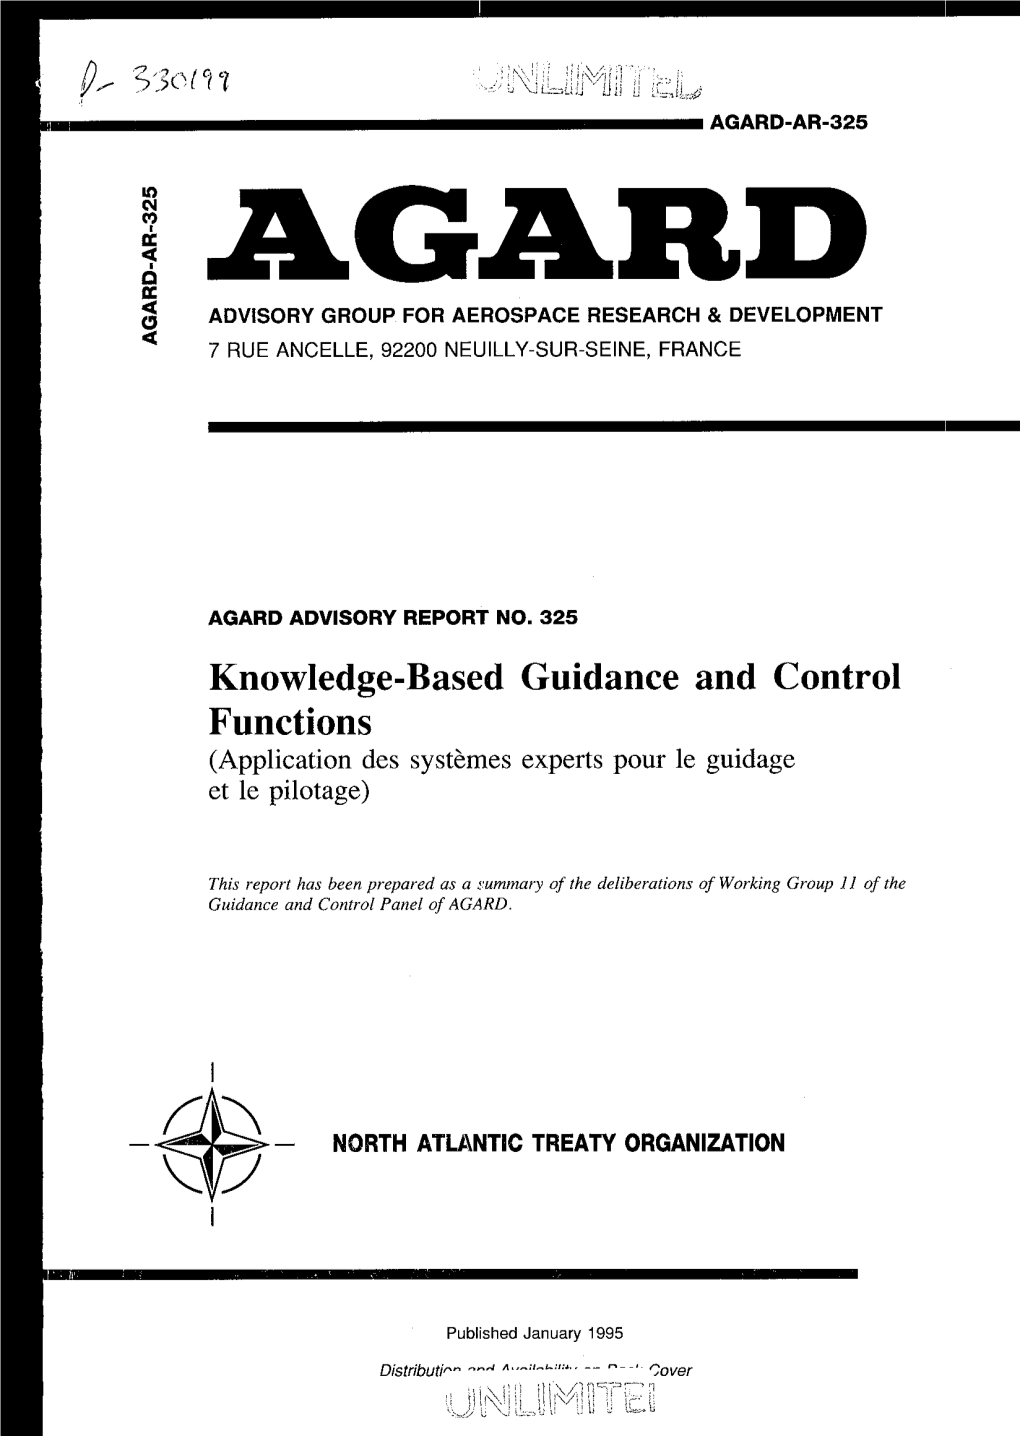 Agard-Ar-325